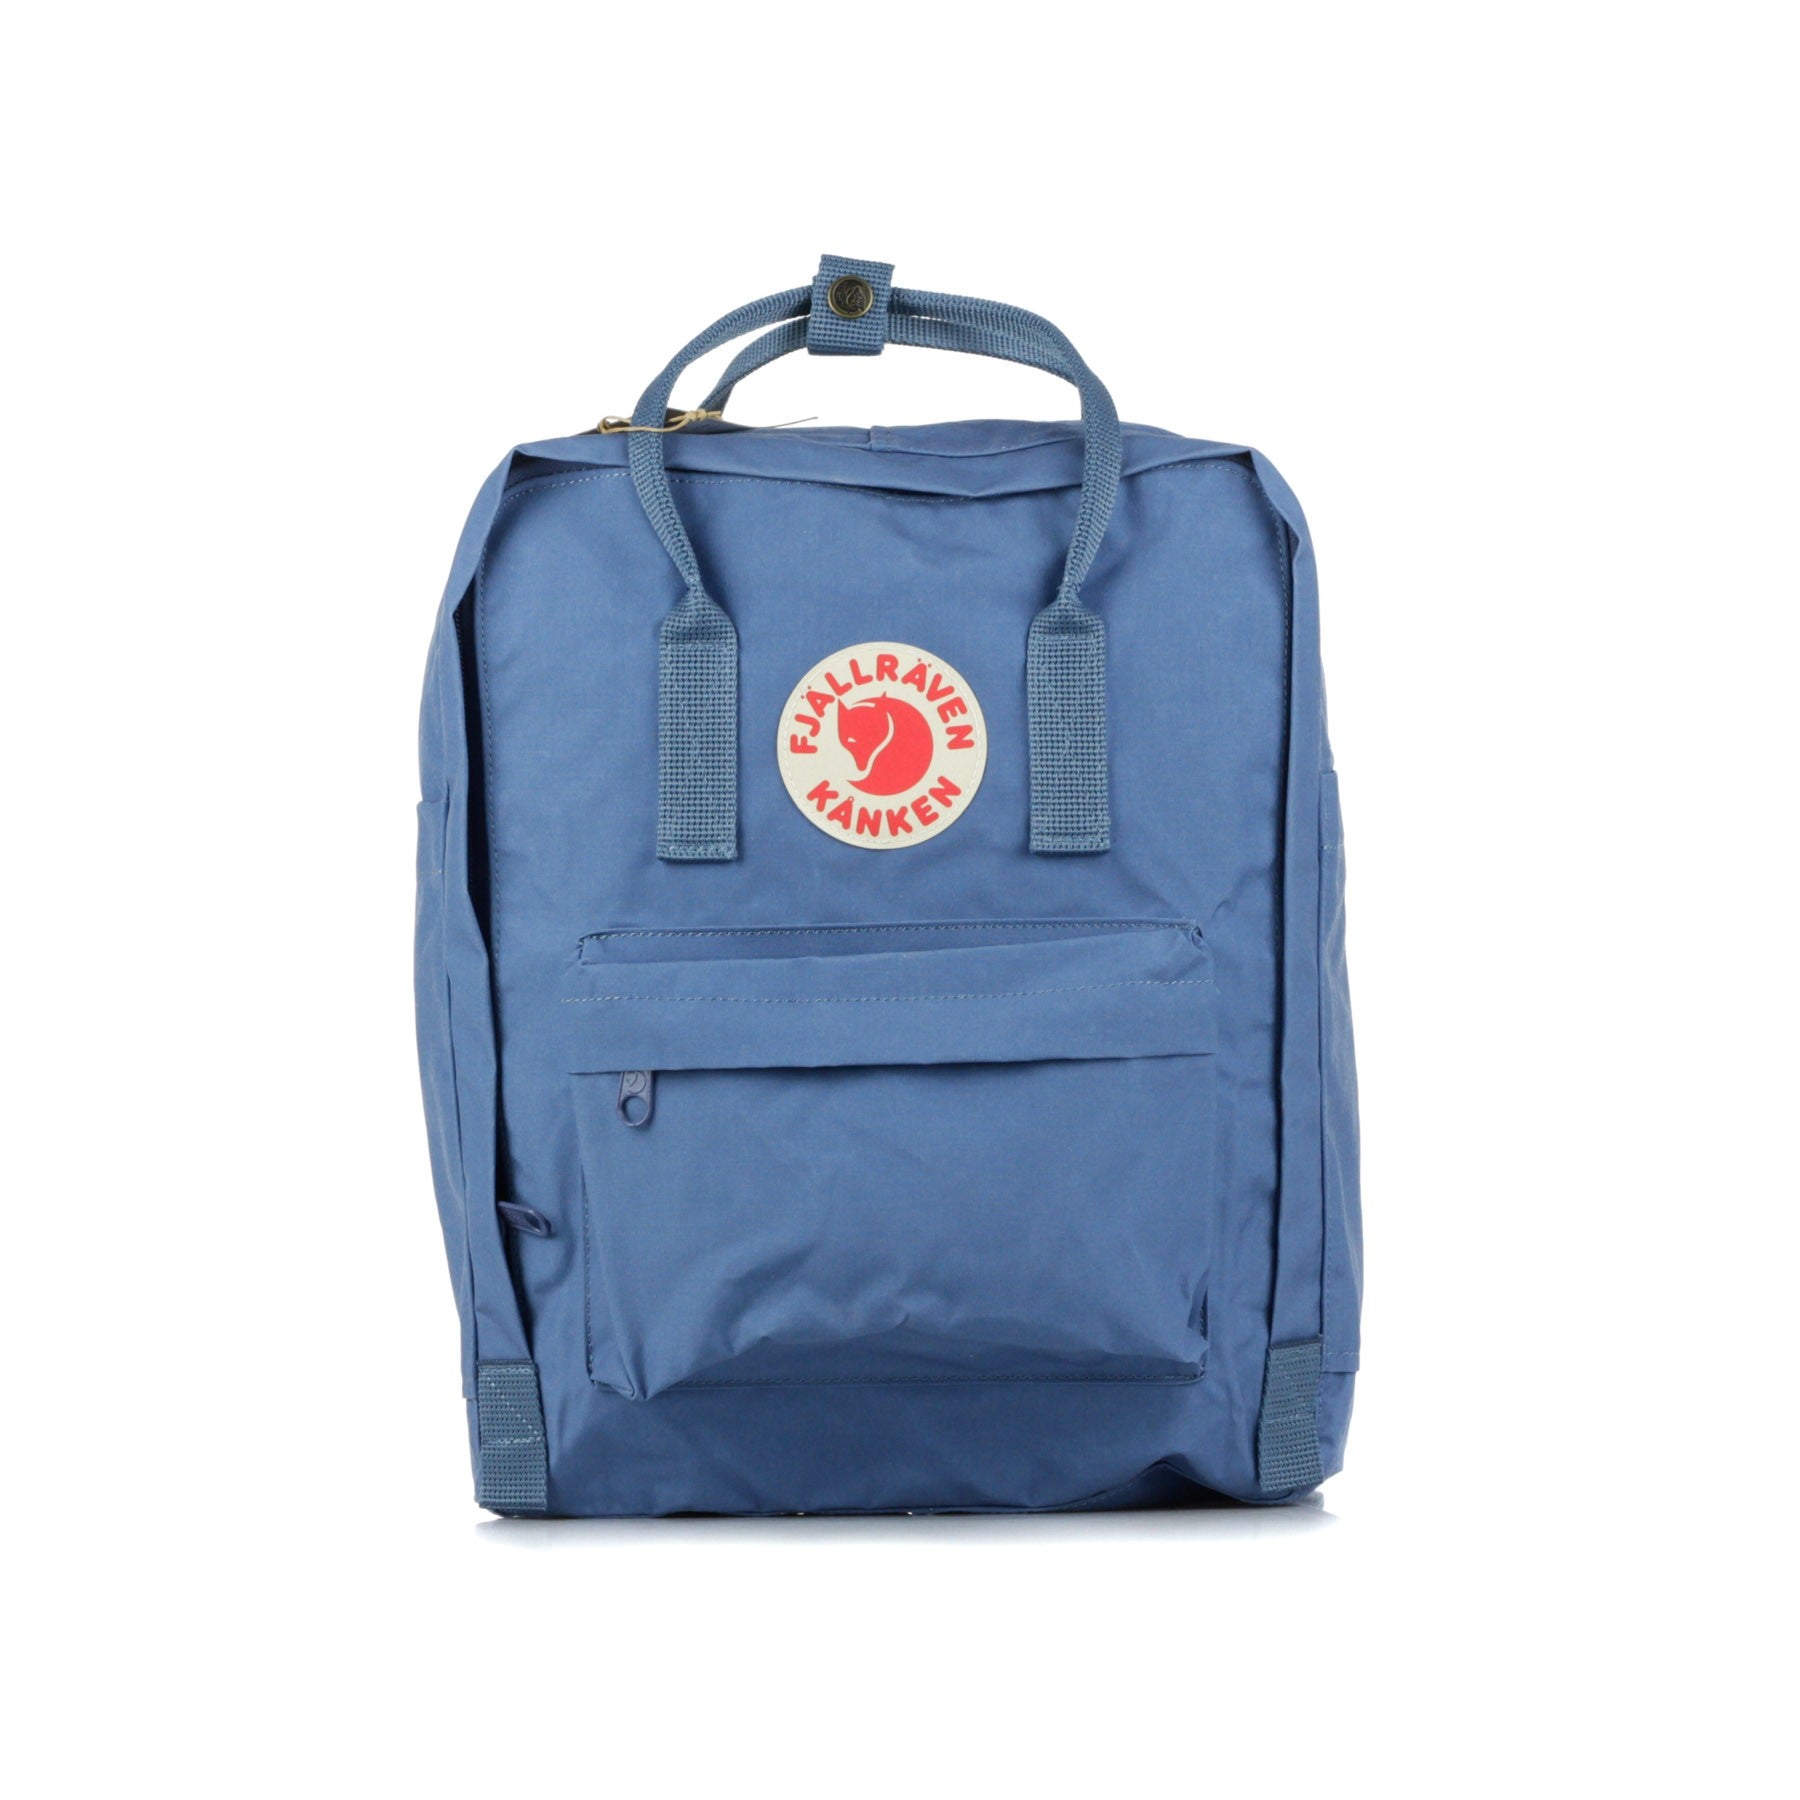 Unisex Kanken Blue Ridge Backpack